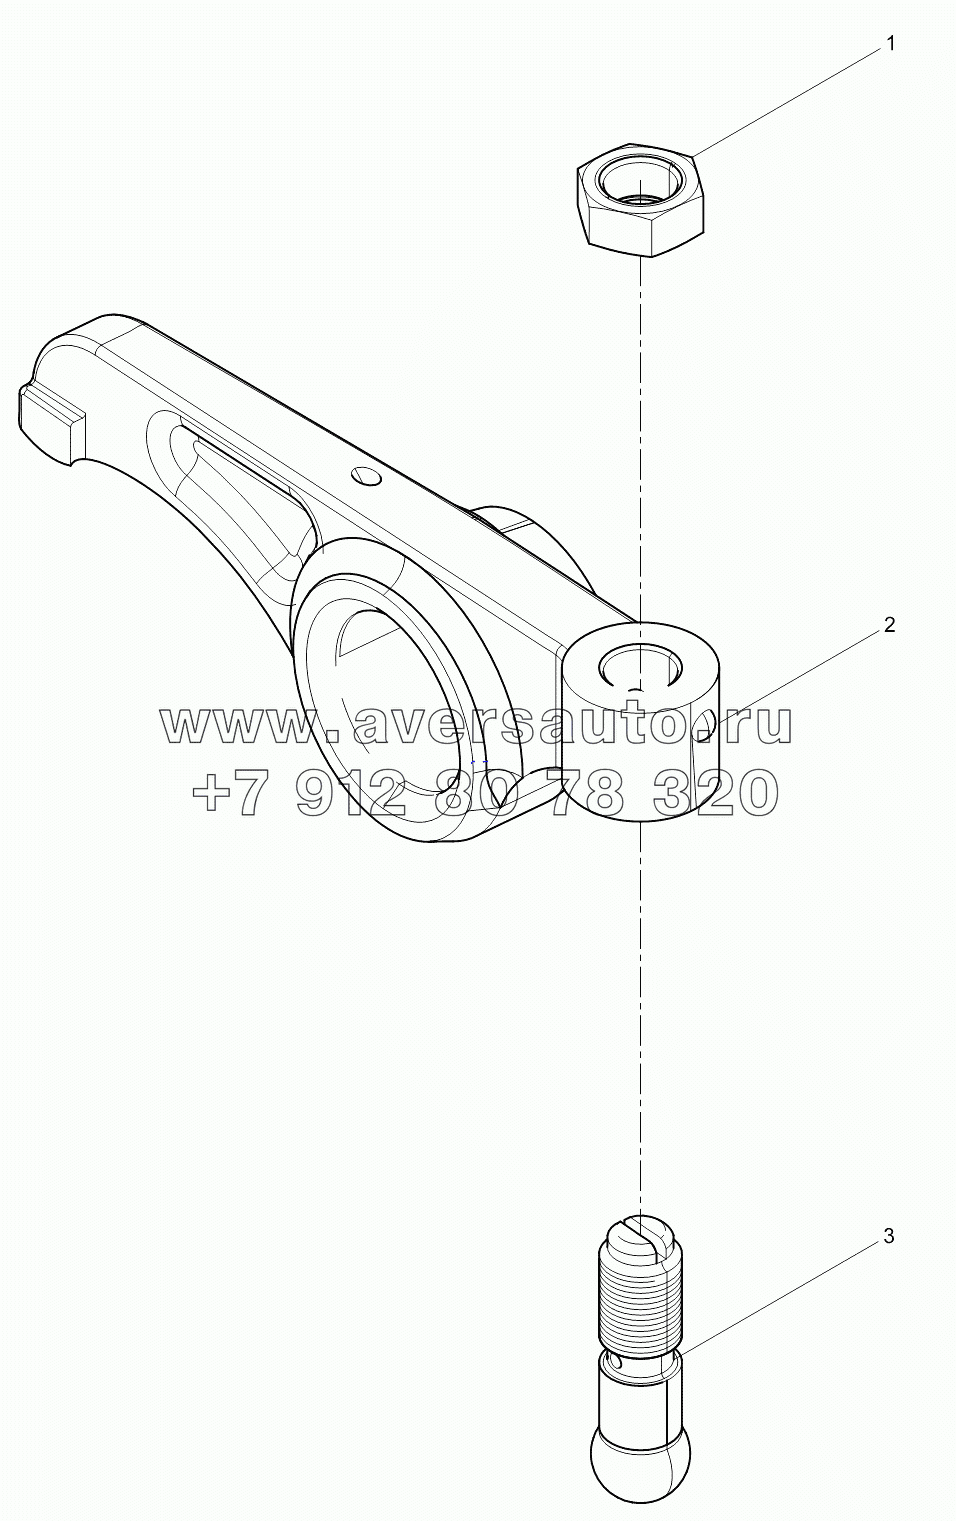 Intake valve rocker arm